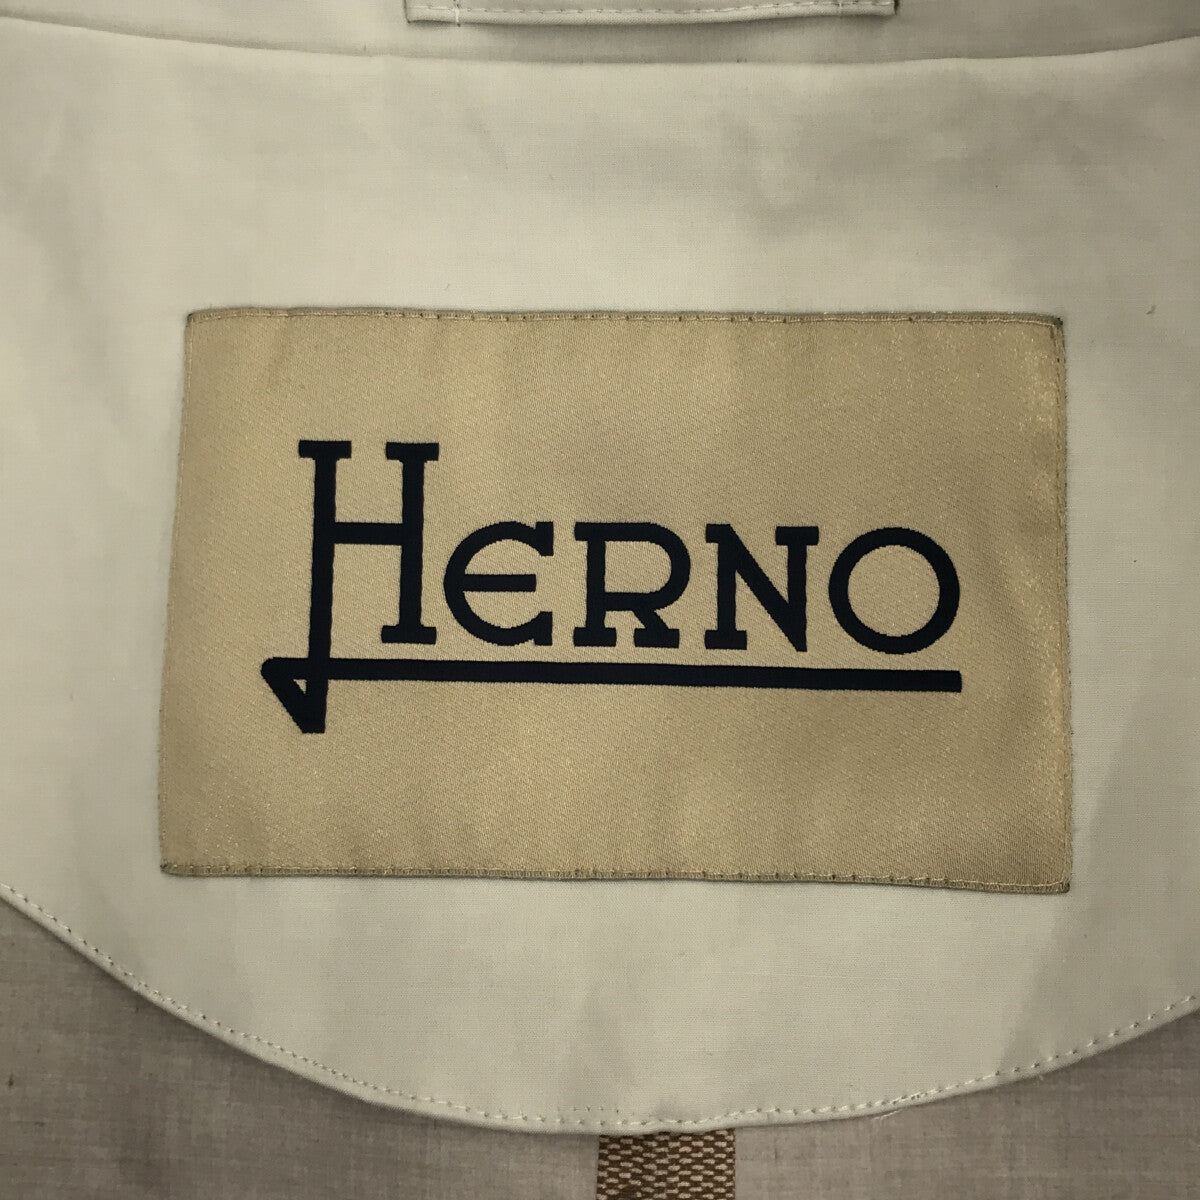 HERNO / ヘルノ | Eufrate スタンドカラー ジャケット | 42 | ライトグレー | レディース